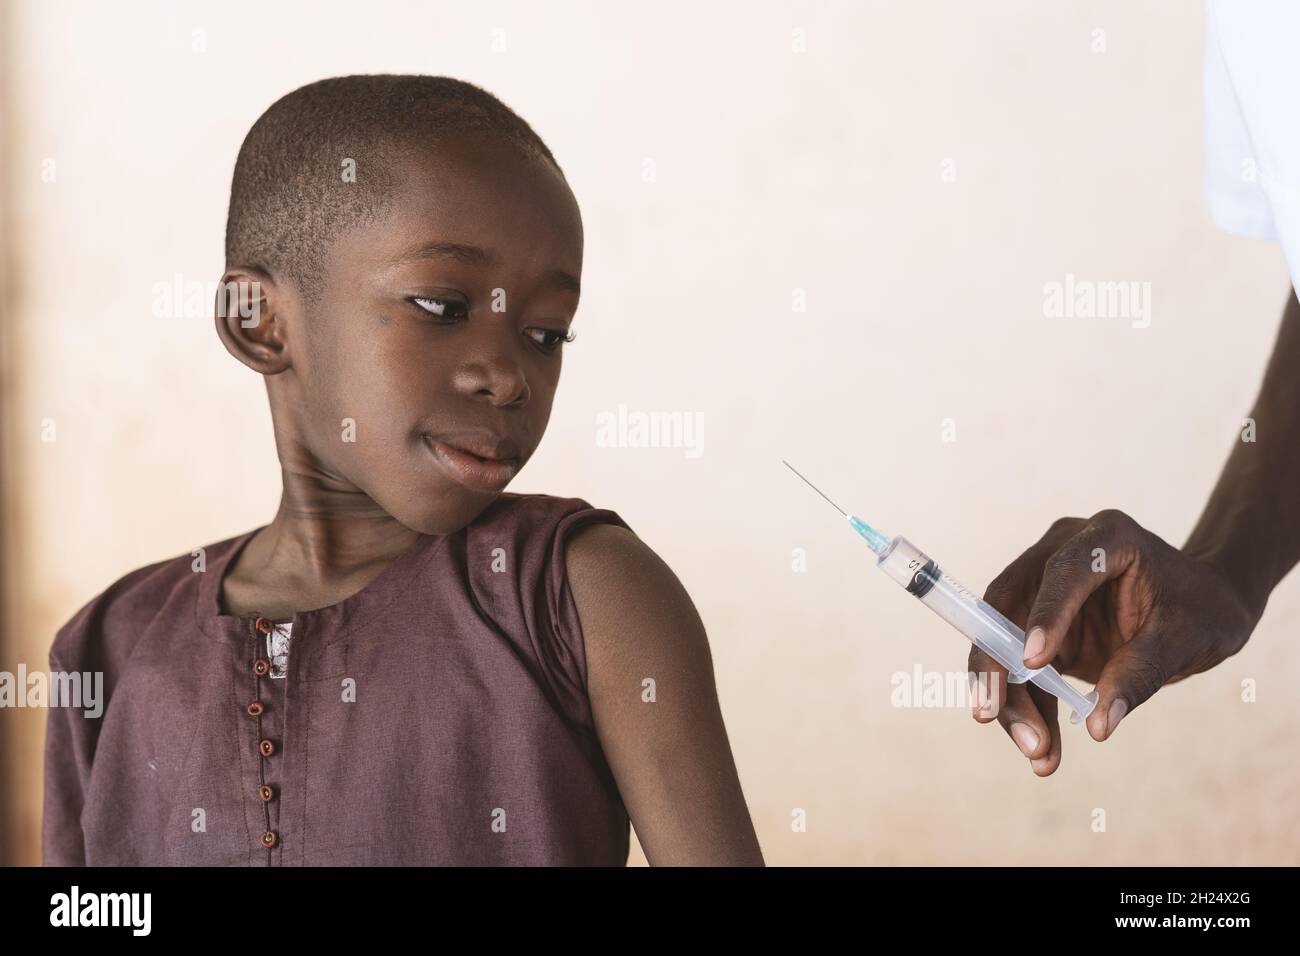 Medizinisches Fachpersonal, das eine Spritze mit Malariaimpfstoff hält, die einem kleinen schwarzen afrikanischen Jungen im Rahmen eines Malariakontrollprogramms injiziert werden soll - Stockfoto